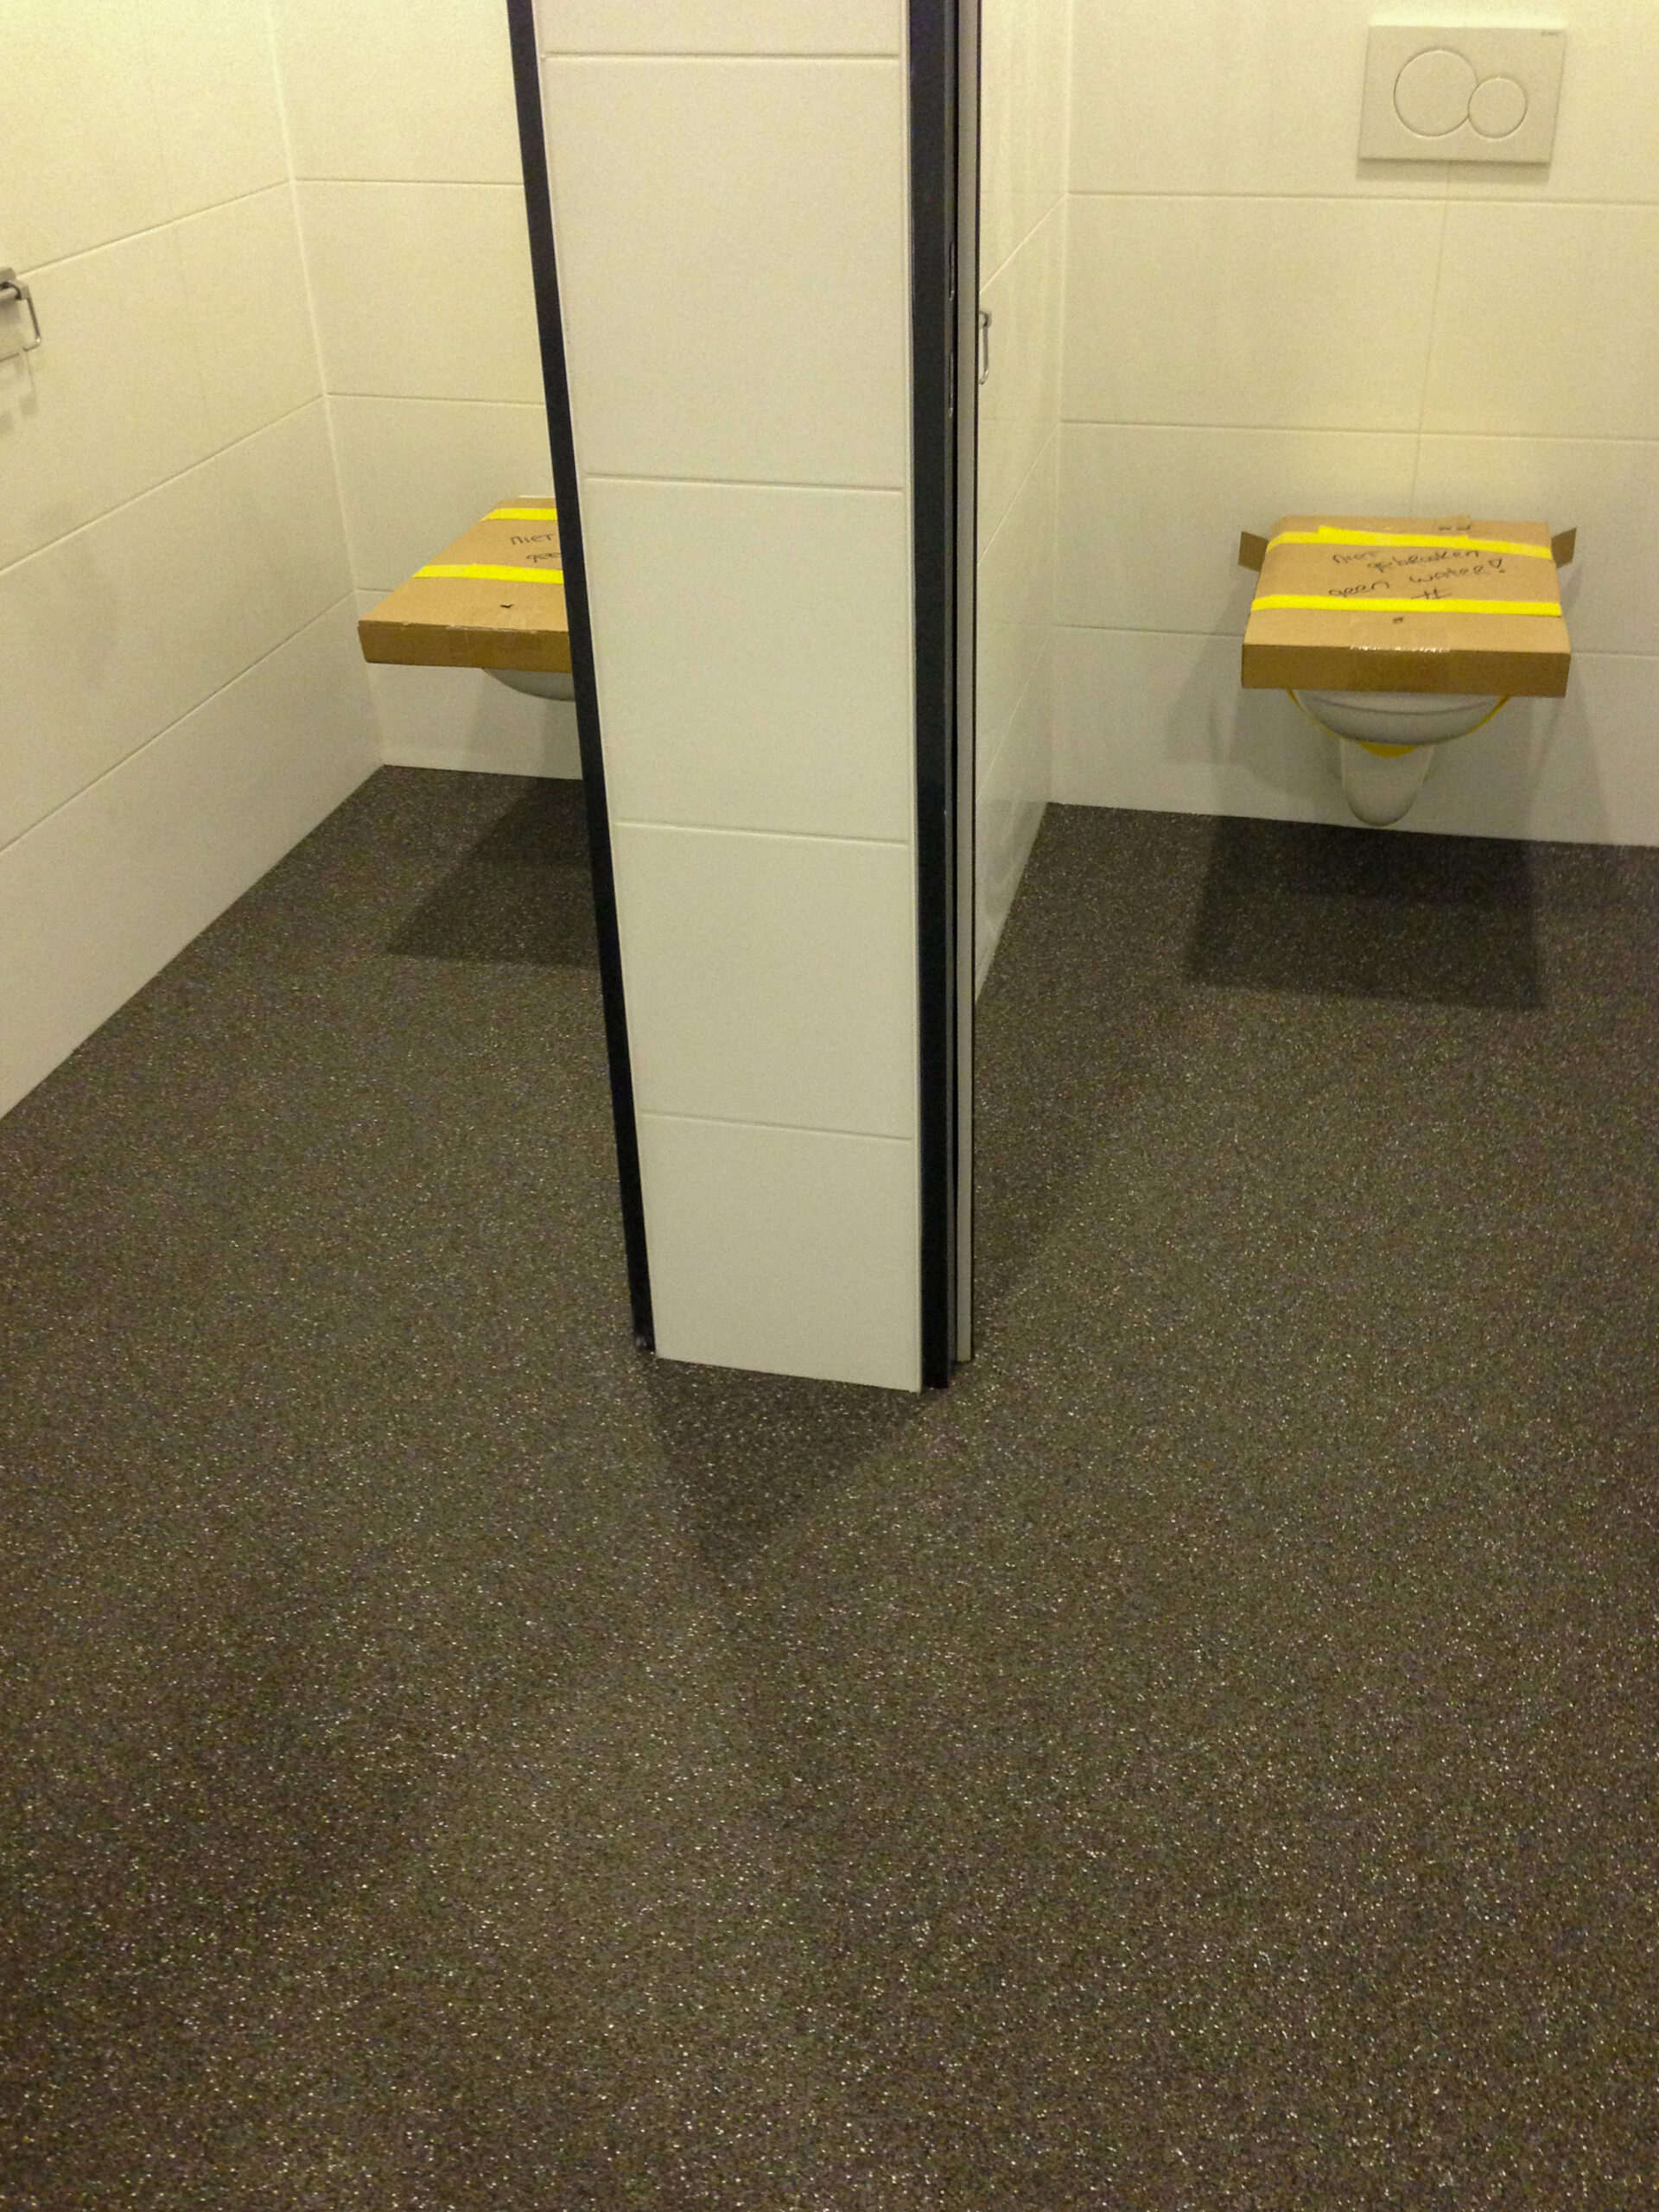 Unica troffelvloer in toiletgroepen bedrijfspand